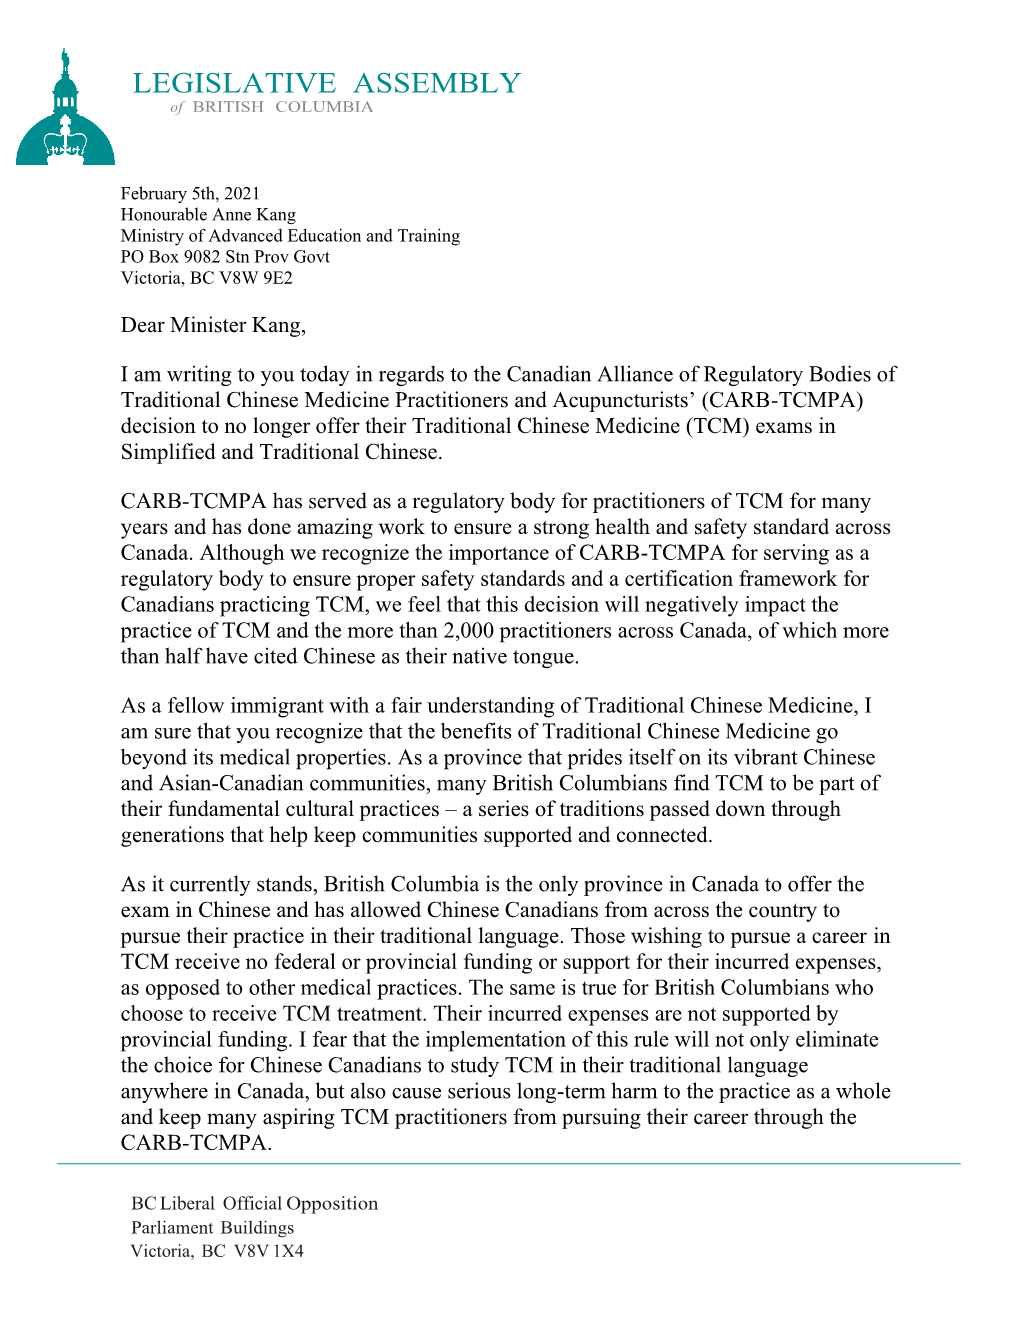 Official MLA Letter